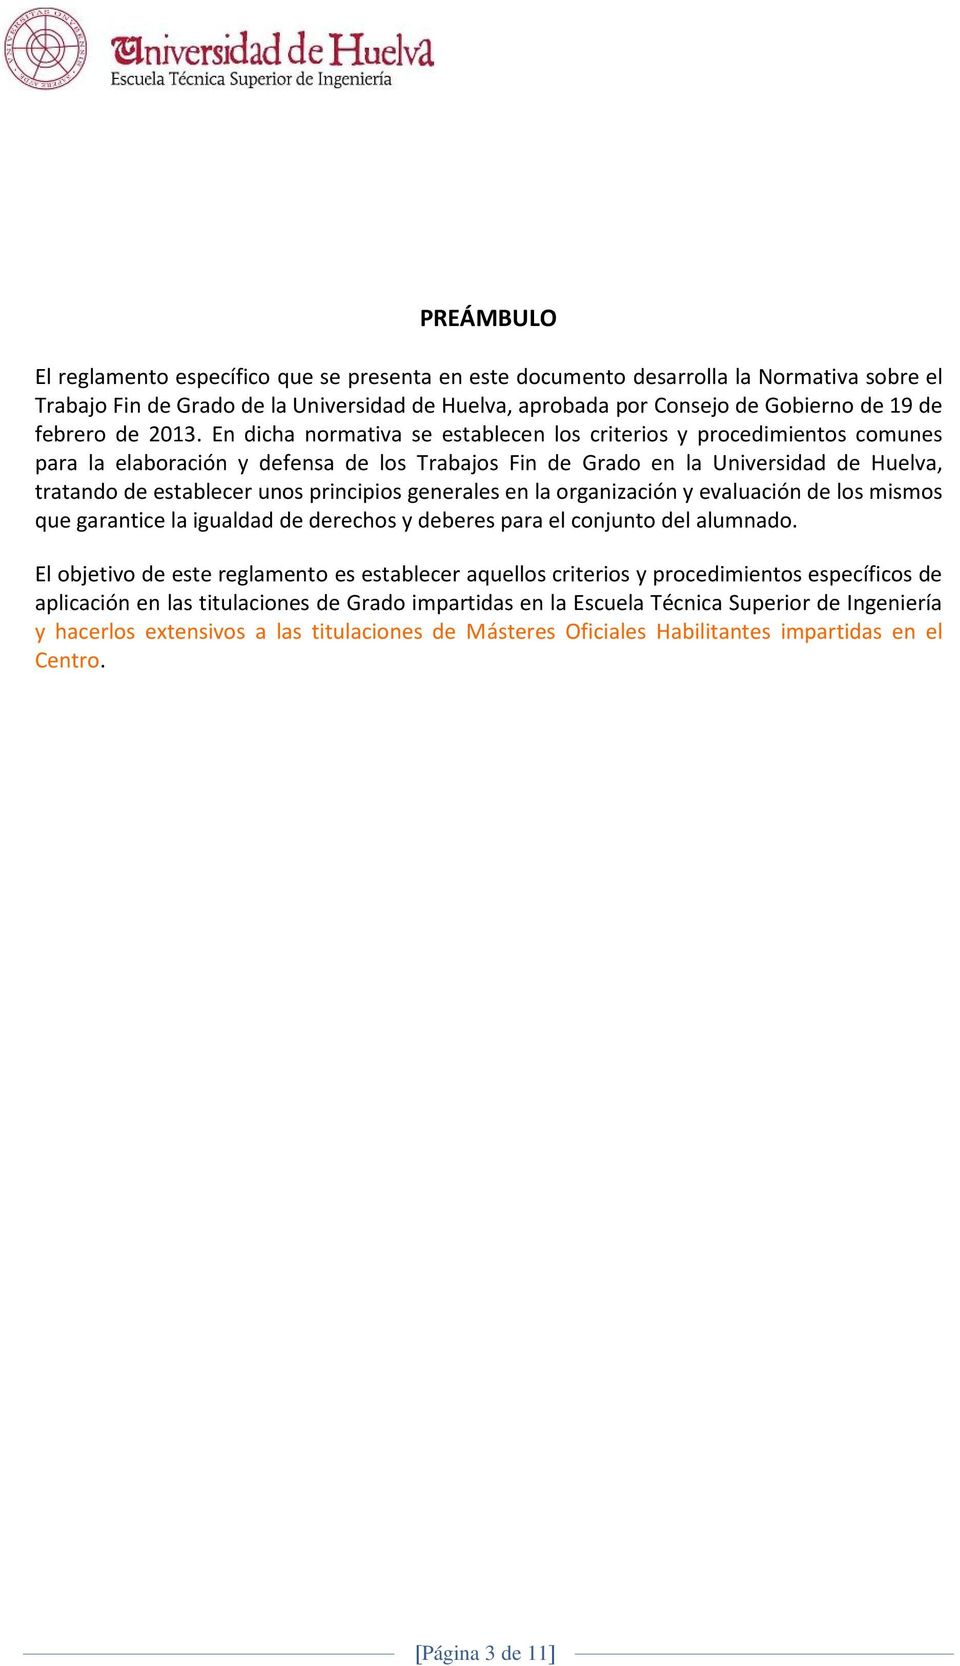 En dicha normativa se establecen los criterios y procedimientos comunes para la elaboración y defensa de los Trabajos Fin de Grado en la Universidad de Huelva, tratando de establecer unos principios